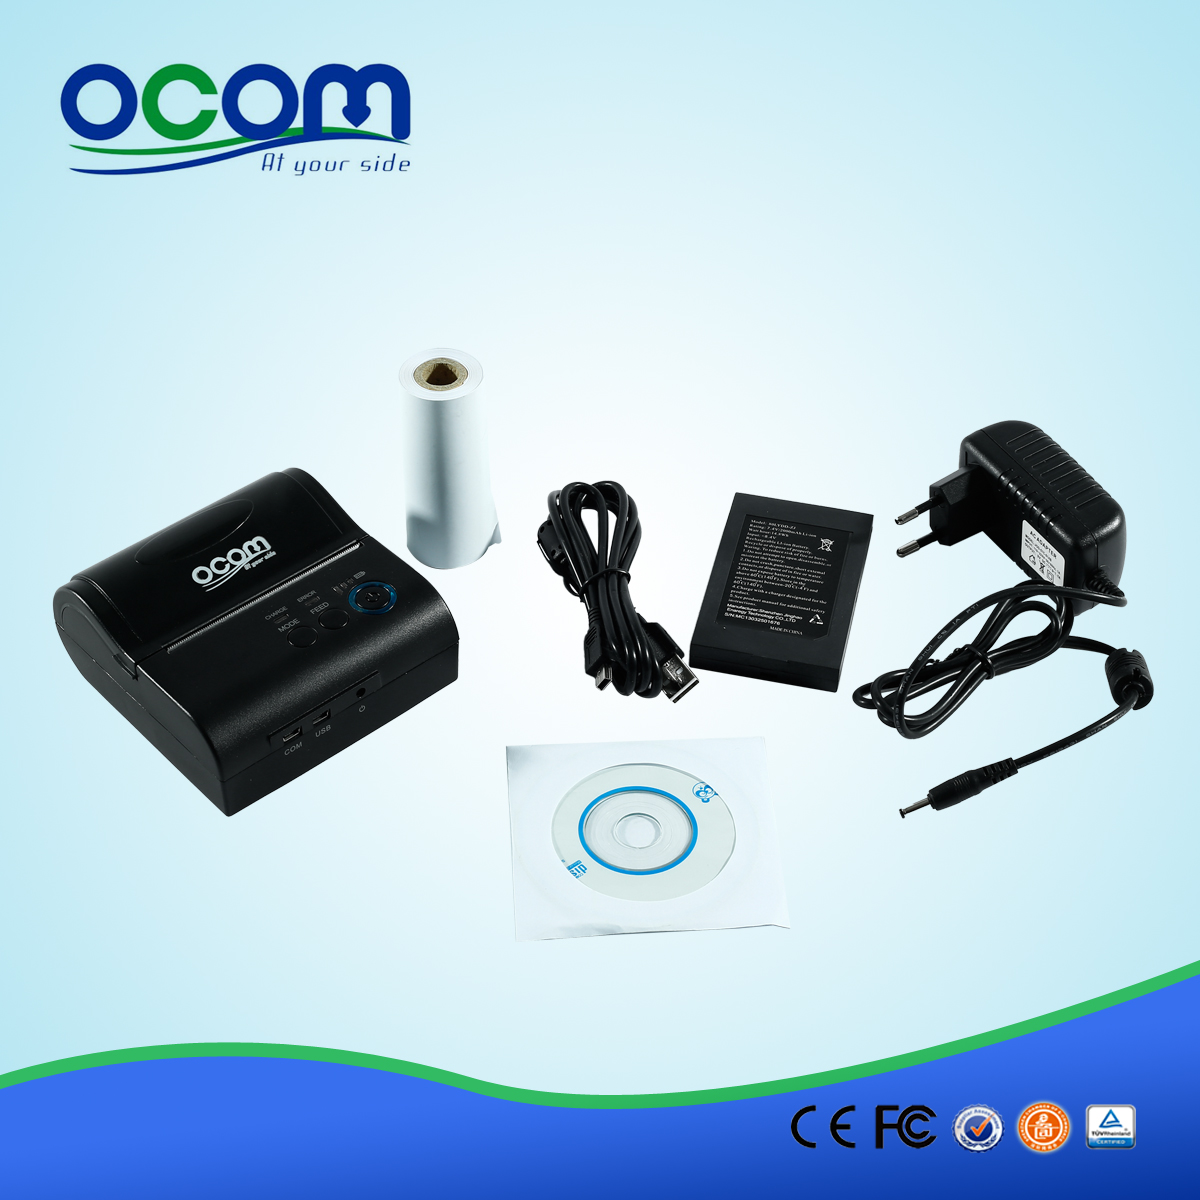 OCPP-M082: Cina stampante bluetooth fabbrica 80 millimetri, Bluetooth stampatore di posizione